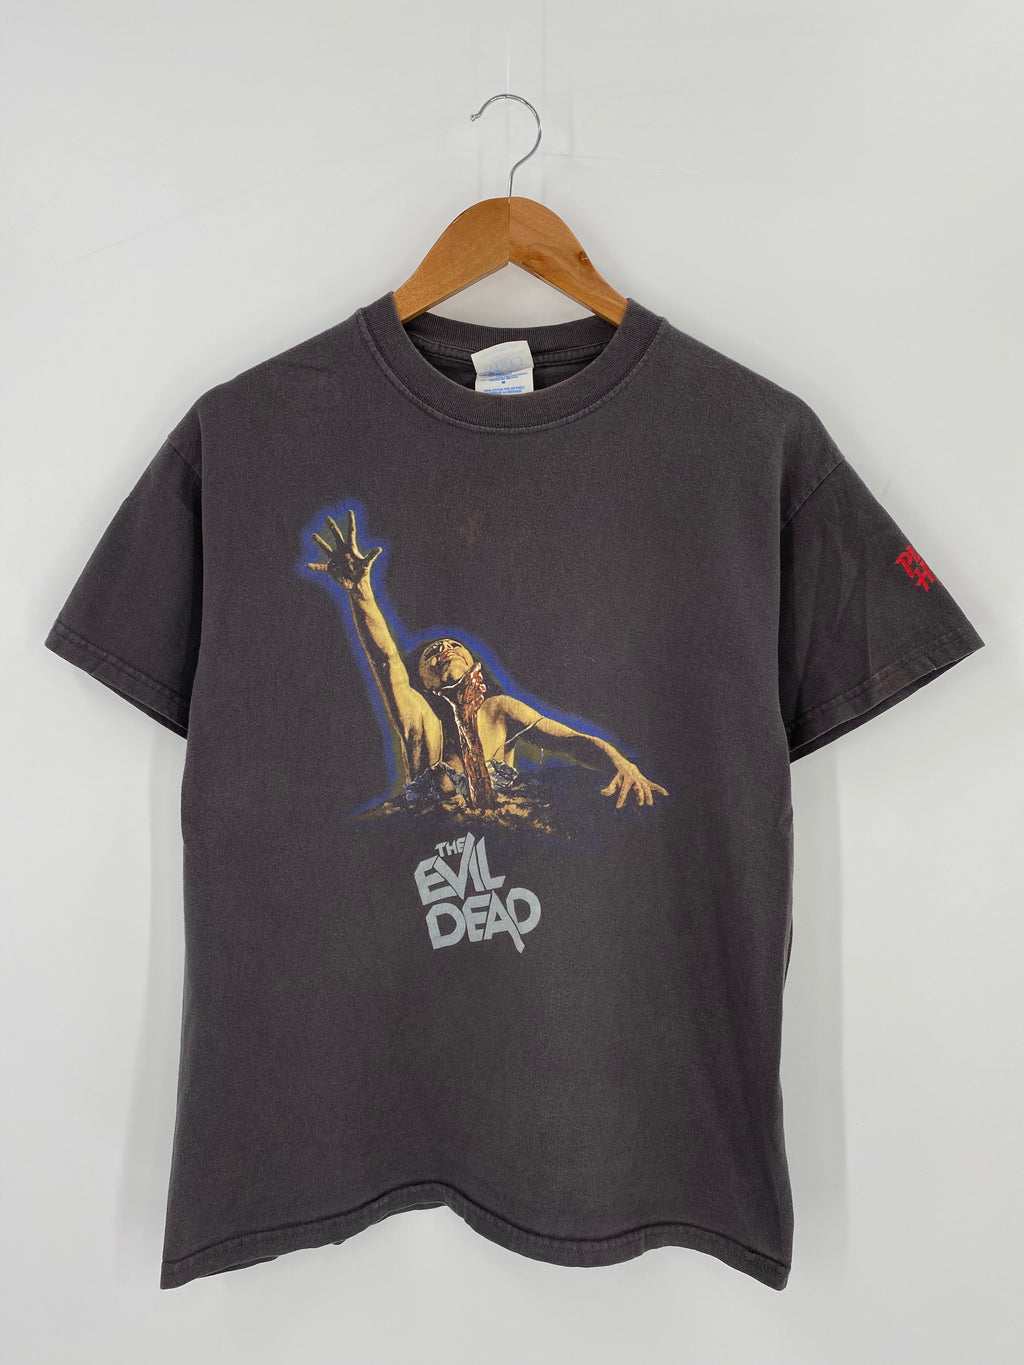 00’ THE EVIL DEAD Size M Vintage T-shirt / Y311